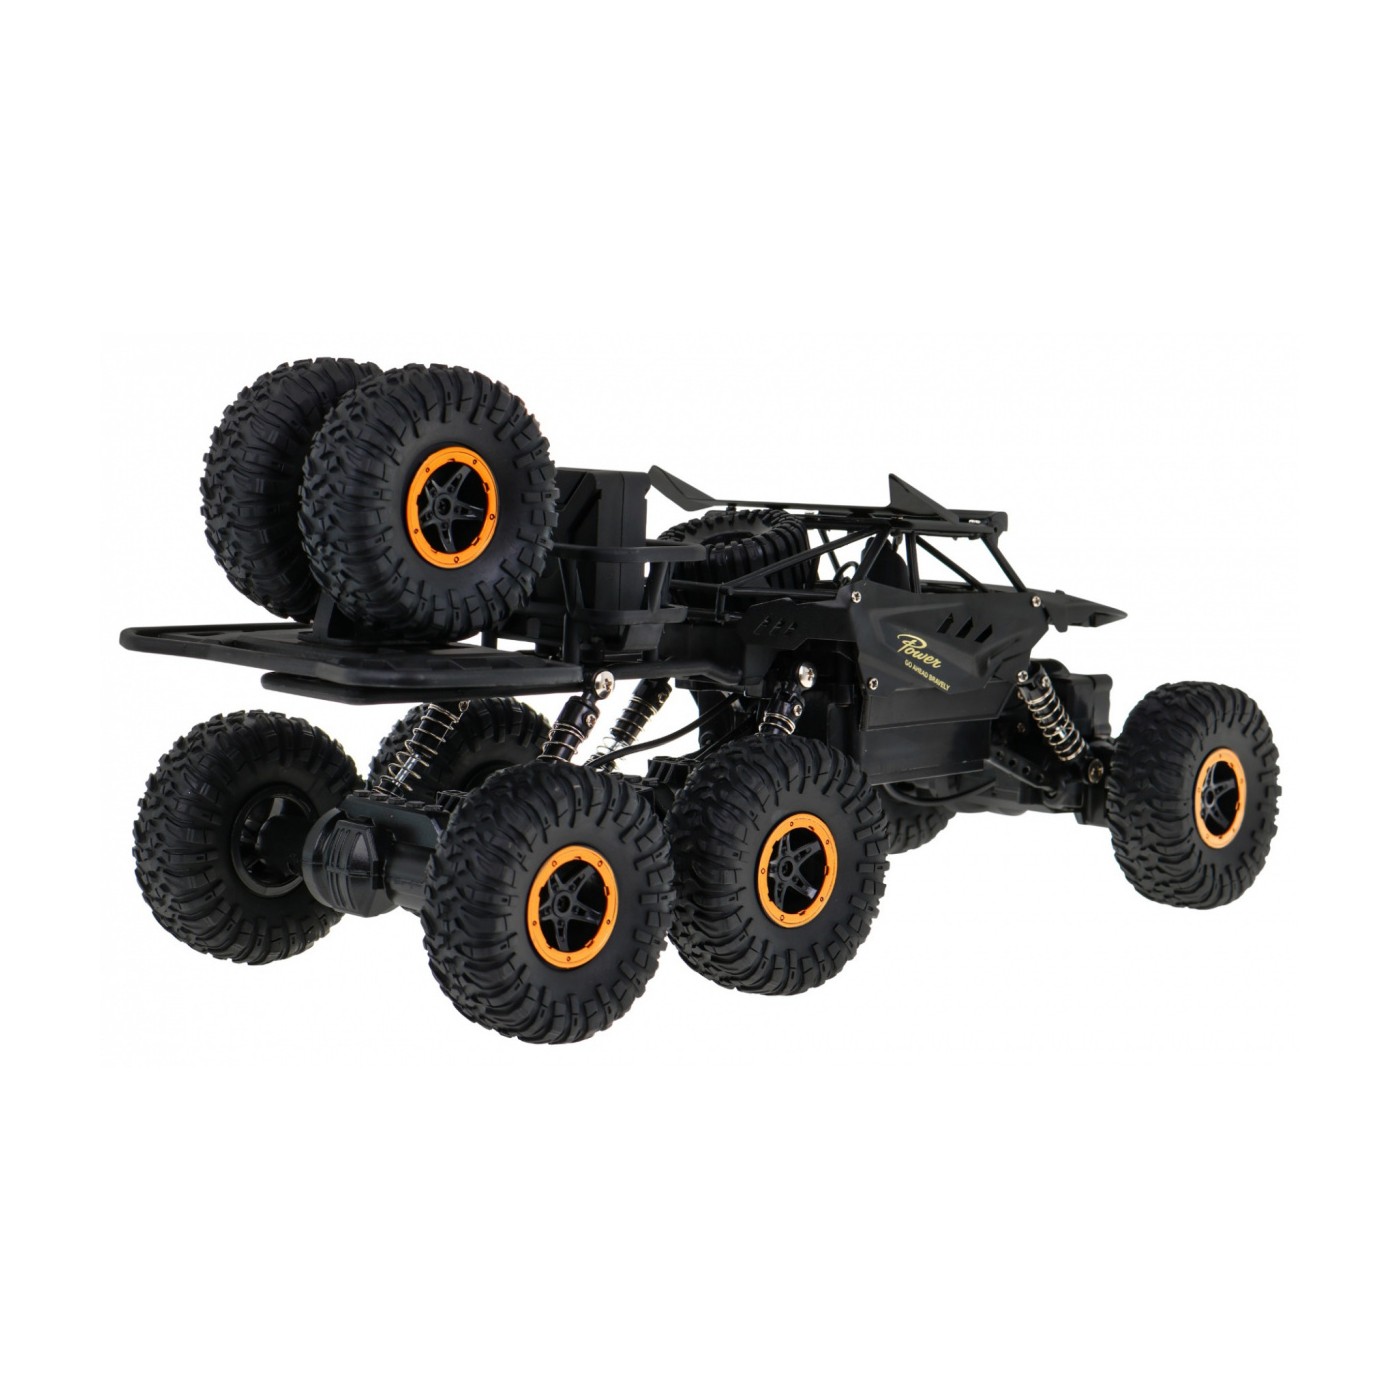 Crawler Rock dla dzieci 6+ Zdalnie sterowany model 1:10 Napęd 6x6 + Zapasowe koła